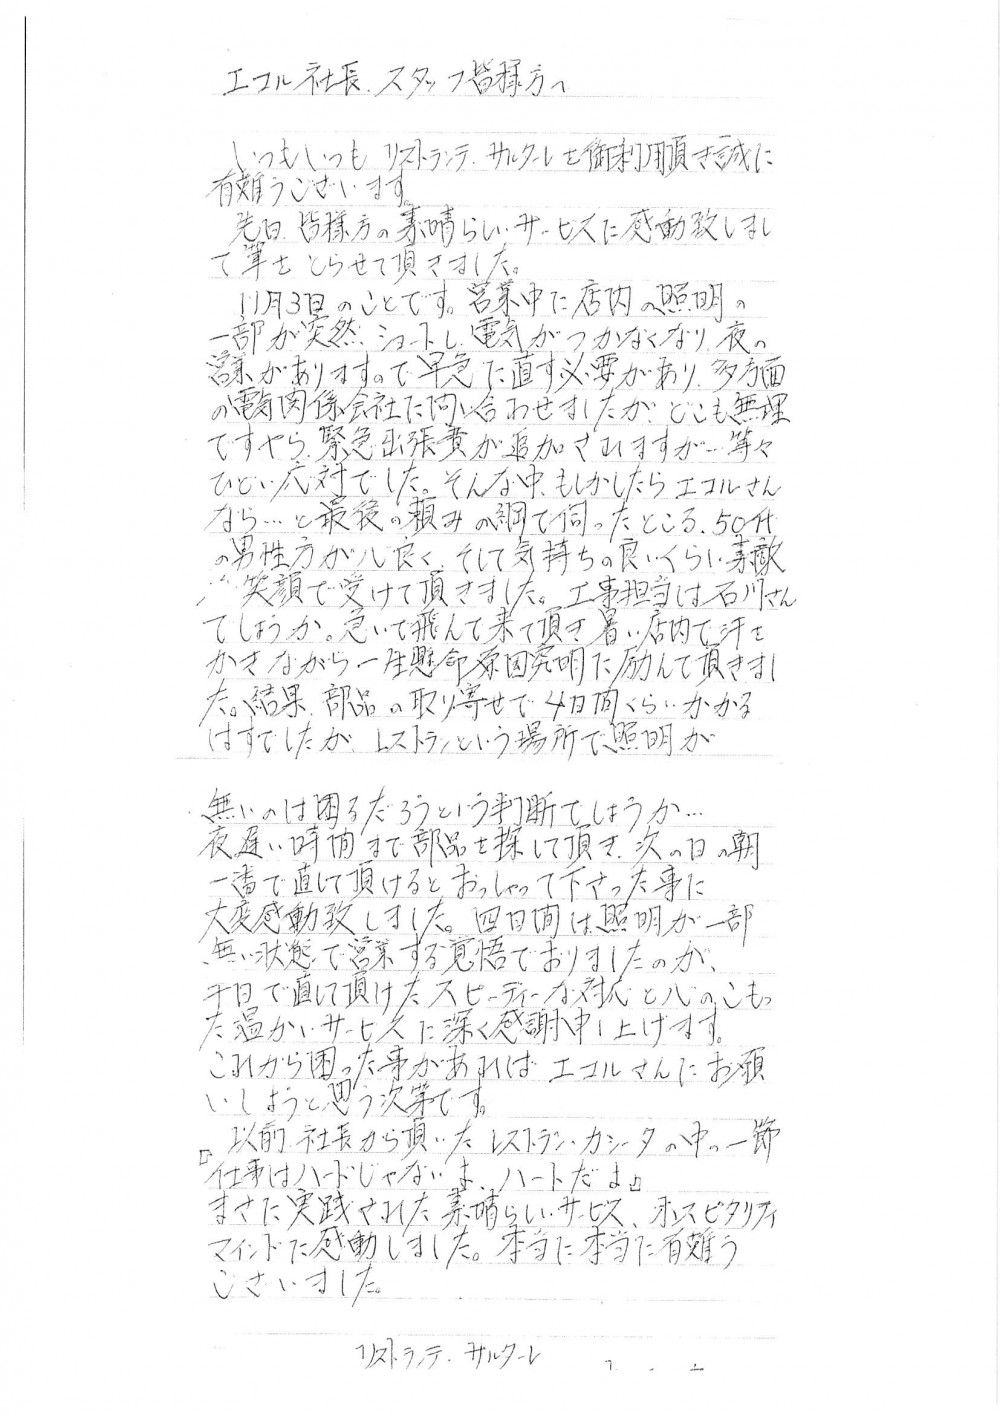 文京区湯島のイタリアンレストランのＵ様から感謝のお手紙を頂きました。